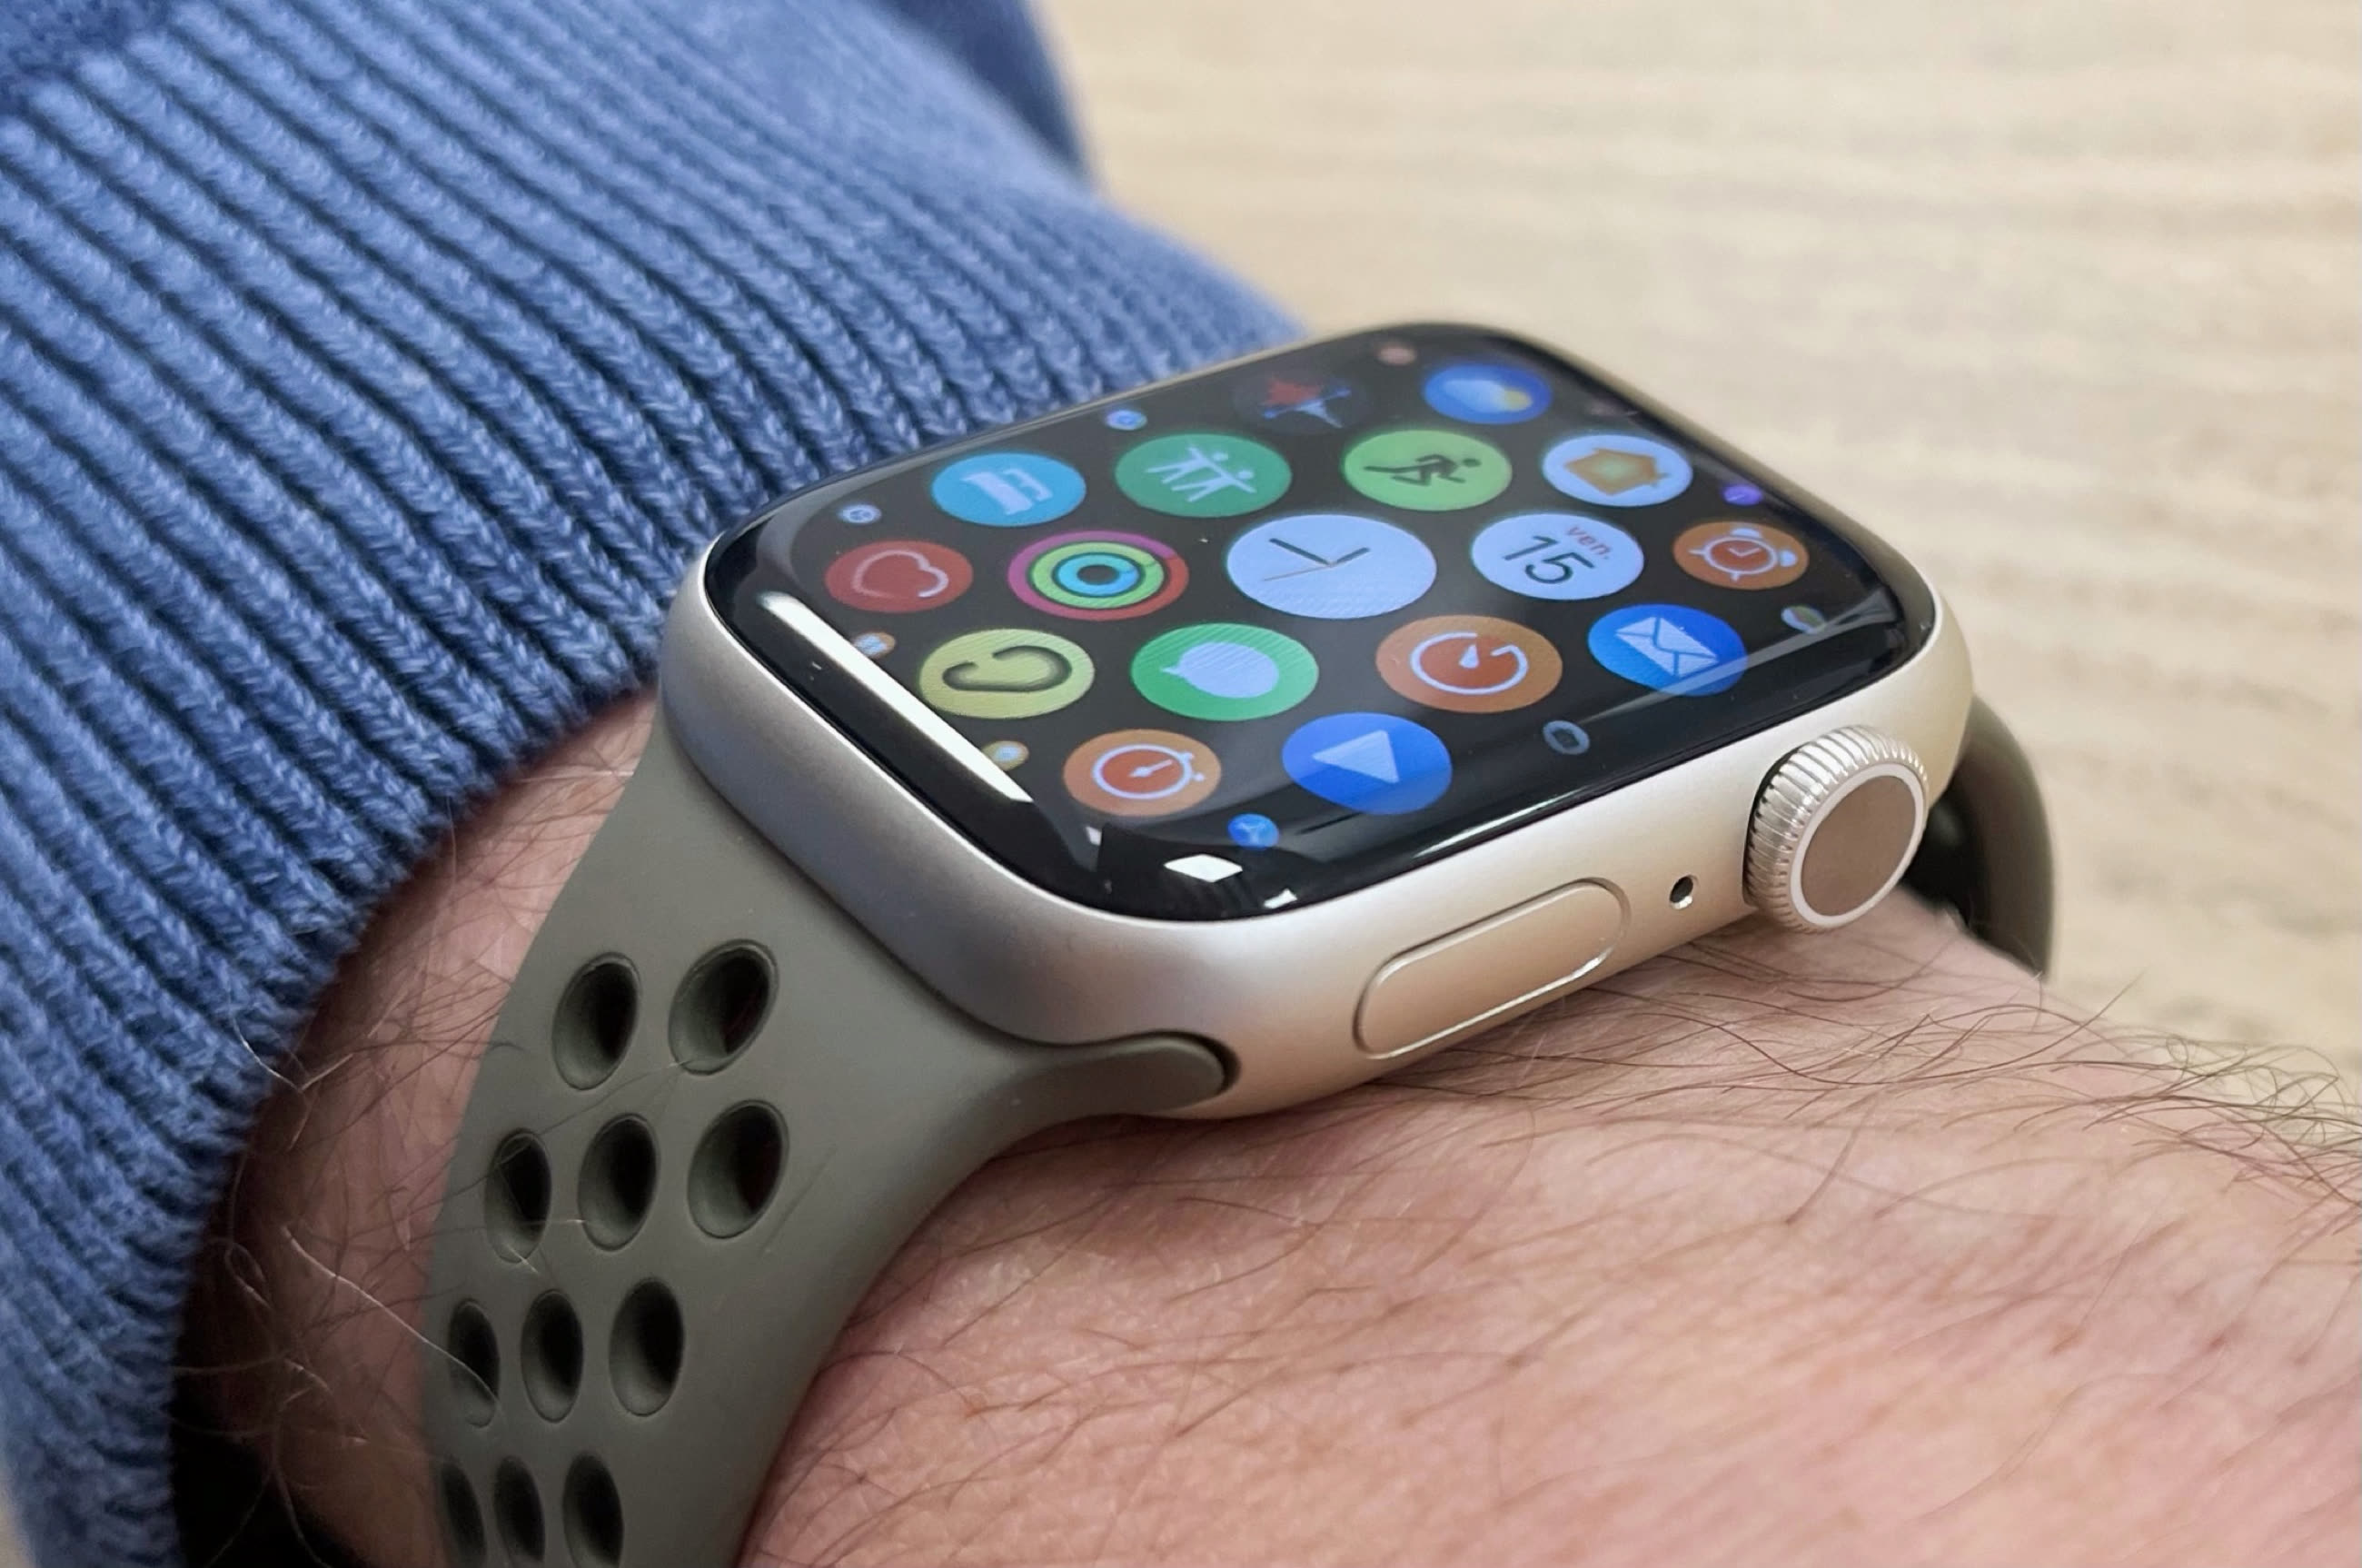 Mesurer les taux d'oxygène sanguin sur l'Apple Watch – Assistance Apple (CA)